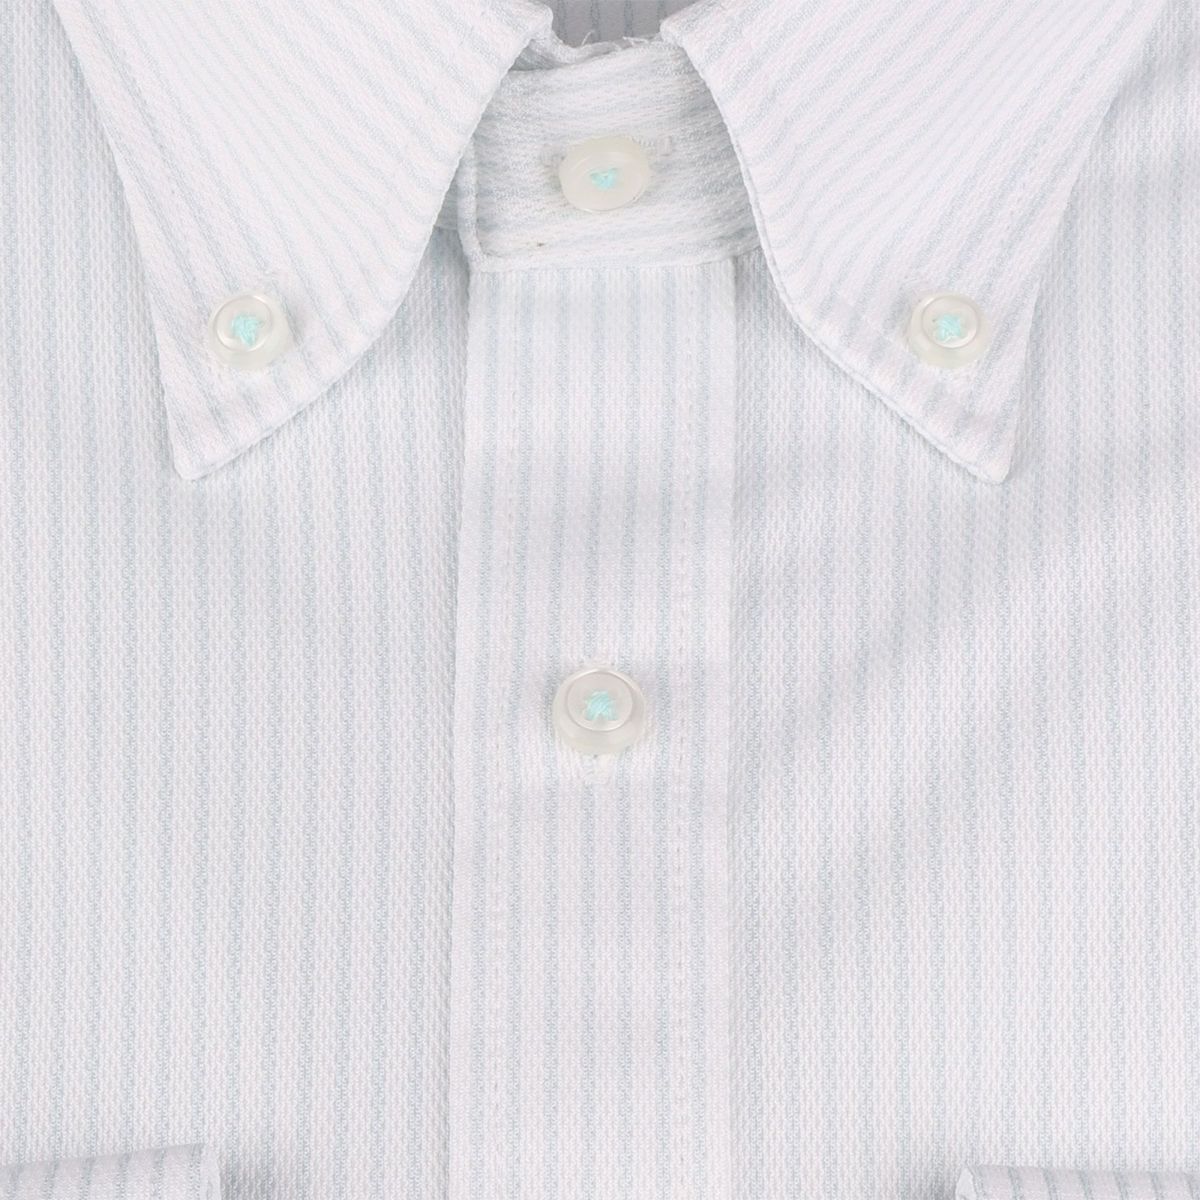 発送在庫あり】【BL】ボタンダウンドレスワイシャツ/ホワイト×ミント